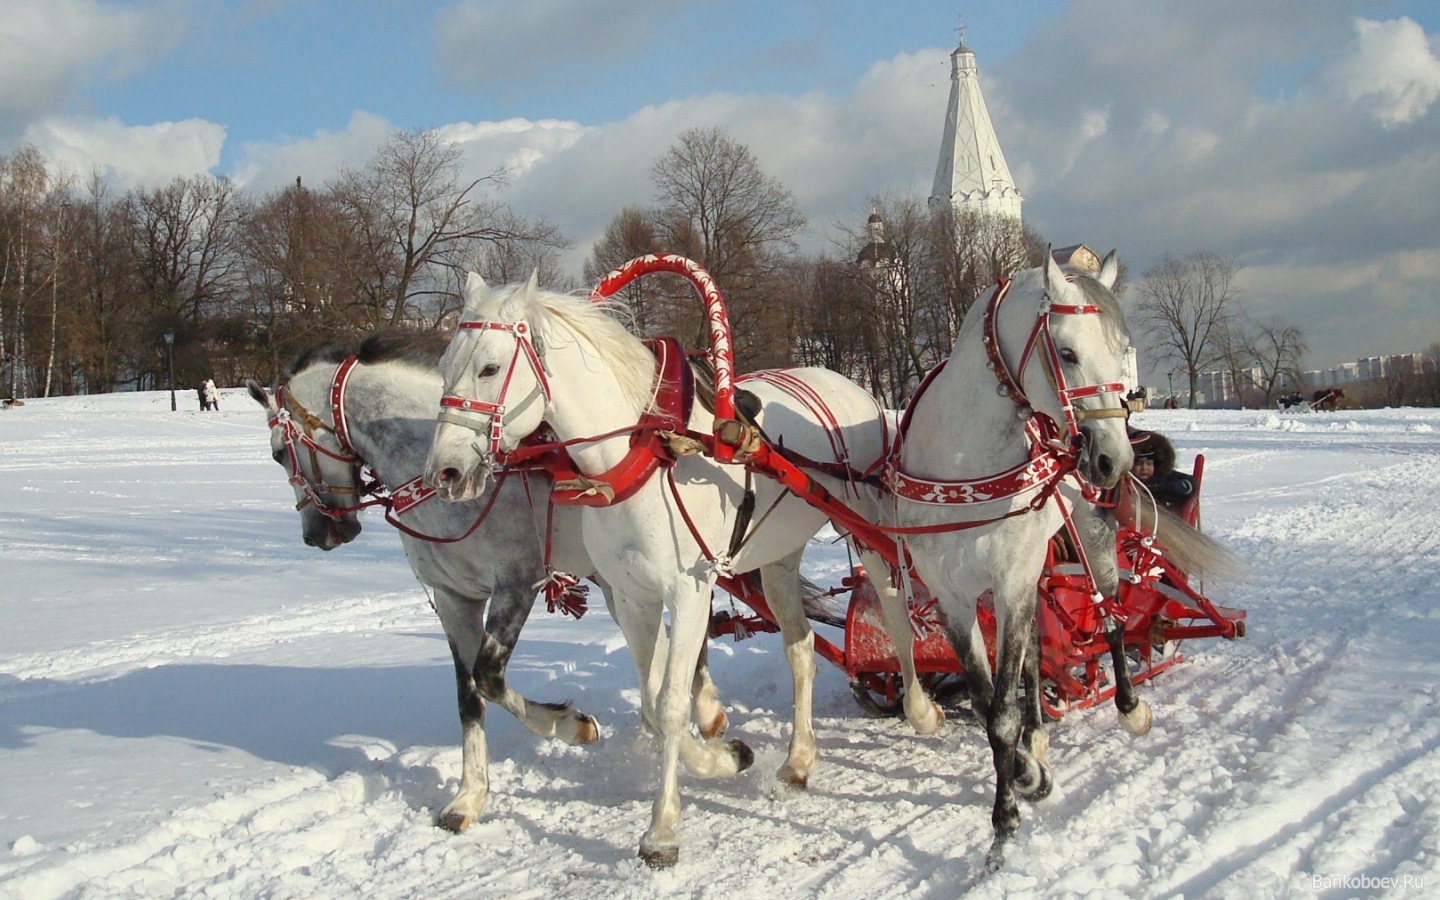 Русская тройка белых лошадей с санями - дочь индоевропейской колесницы?